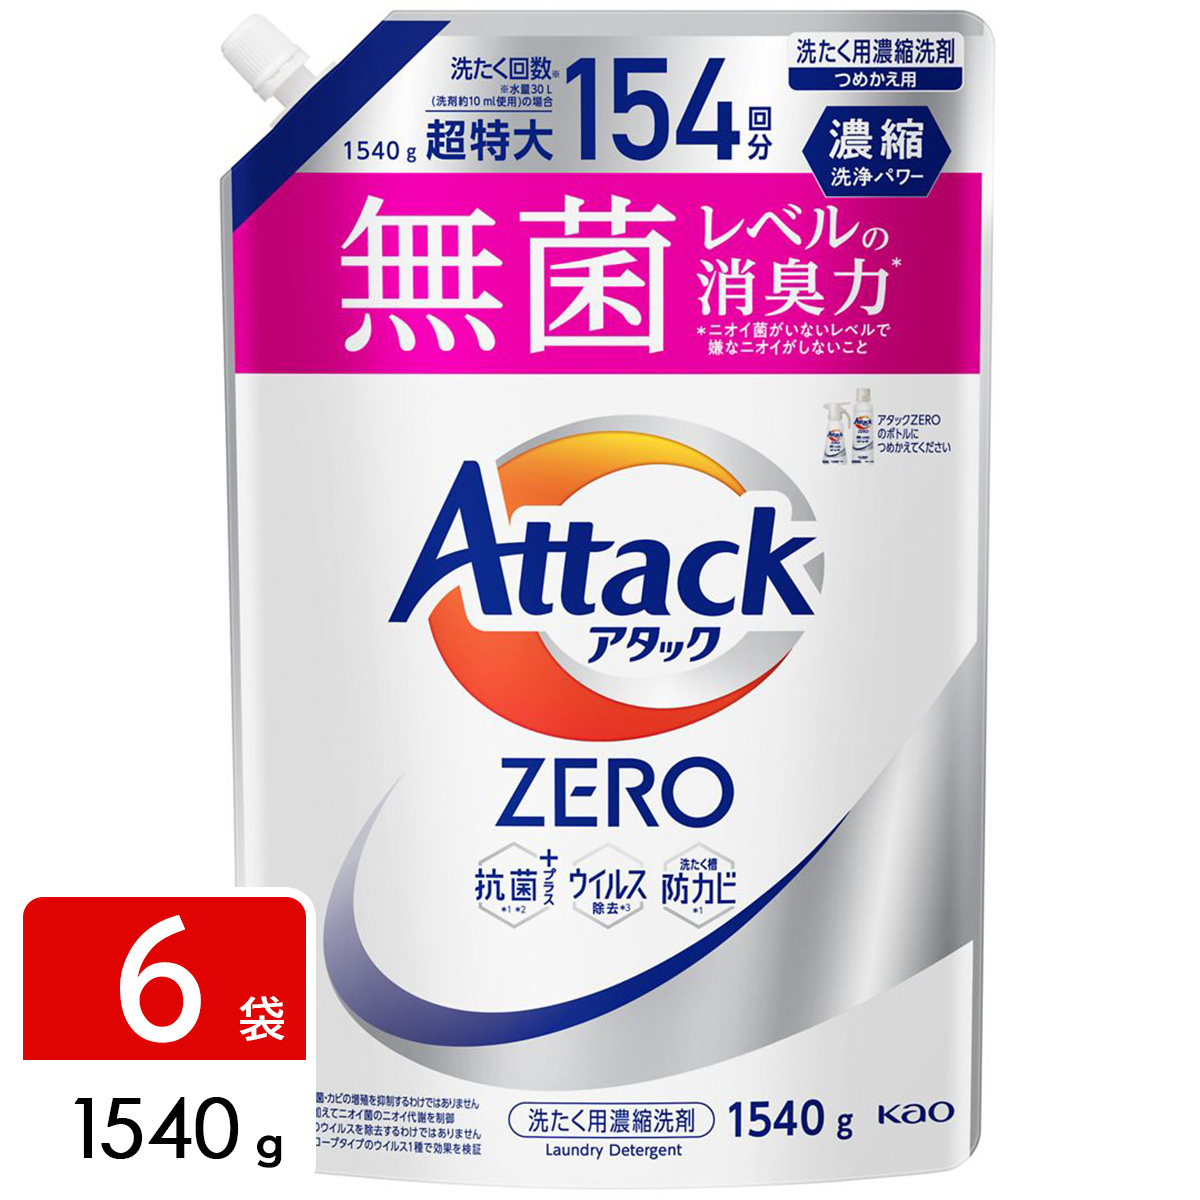 アタックZERO Attack ZERO 洗濯洗剤 詰め替え用 1540g×6袋